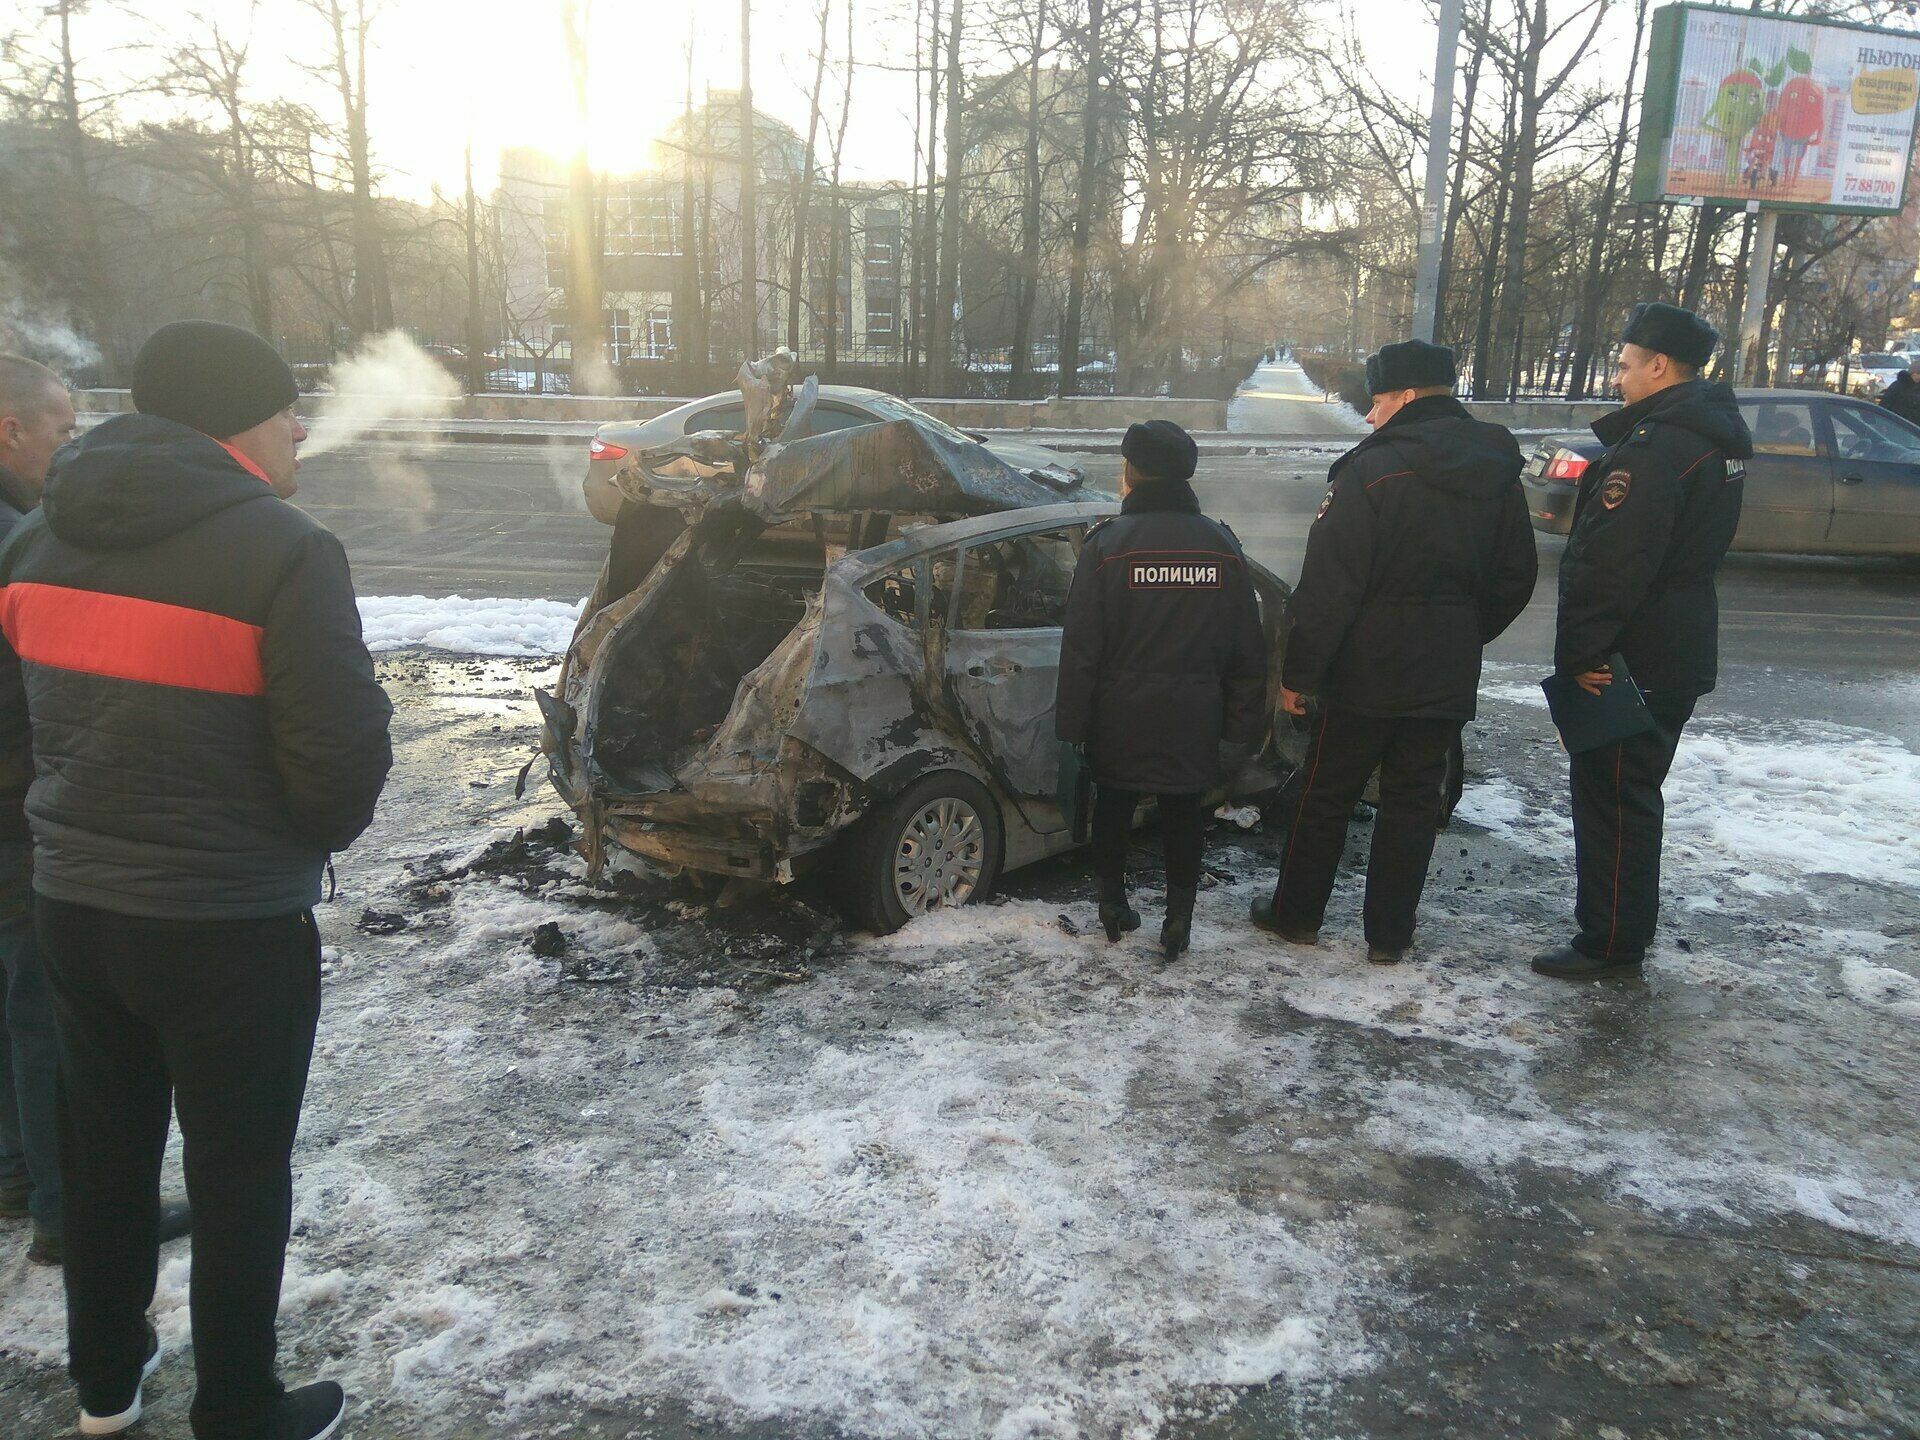 В центре Челябинска взорвался автомобиль: есть раненые